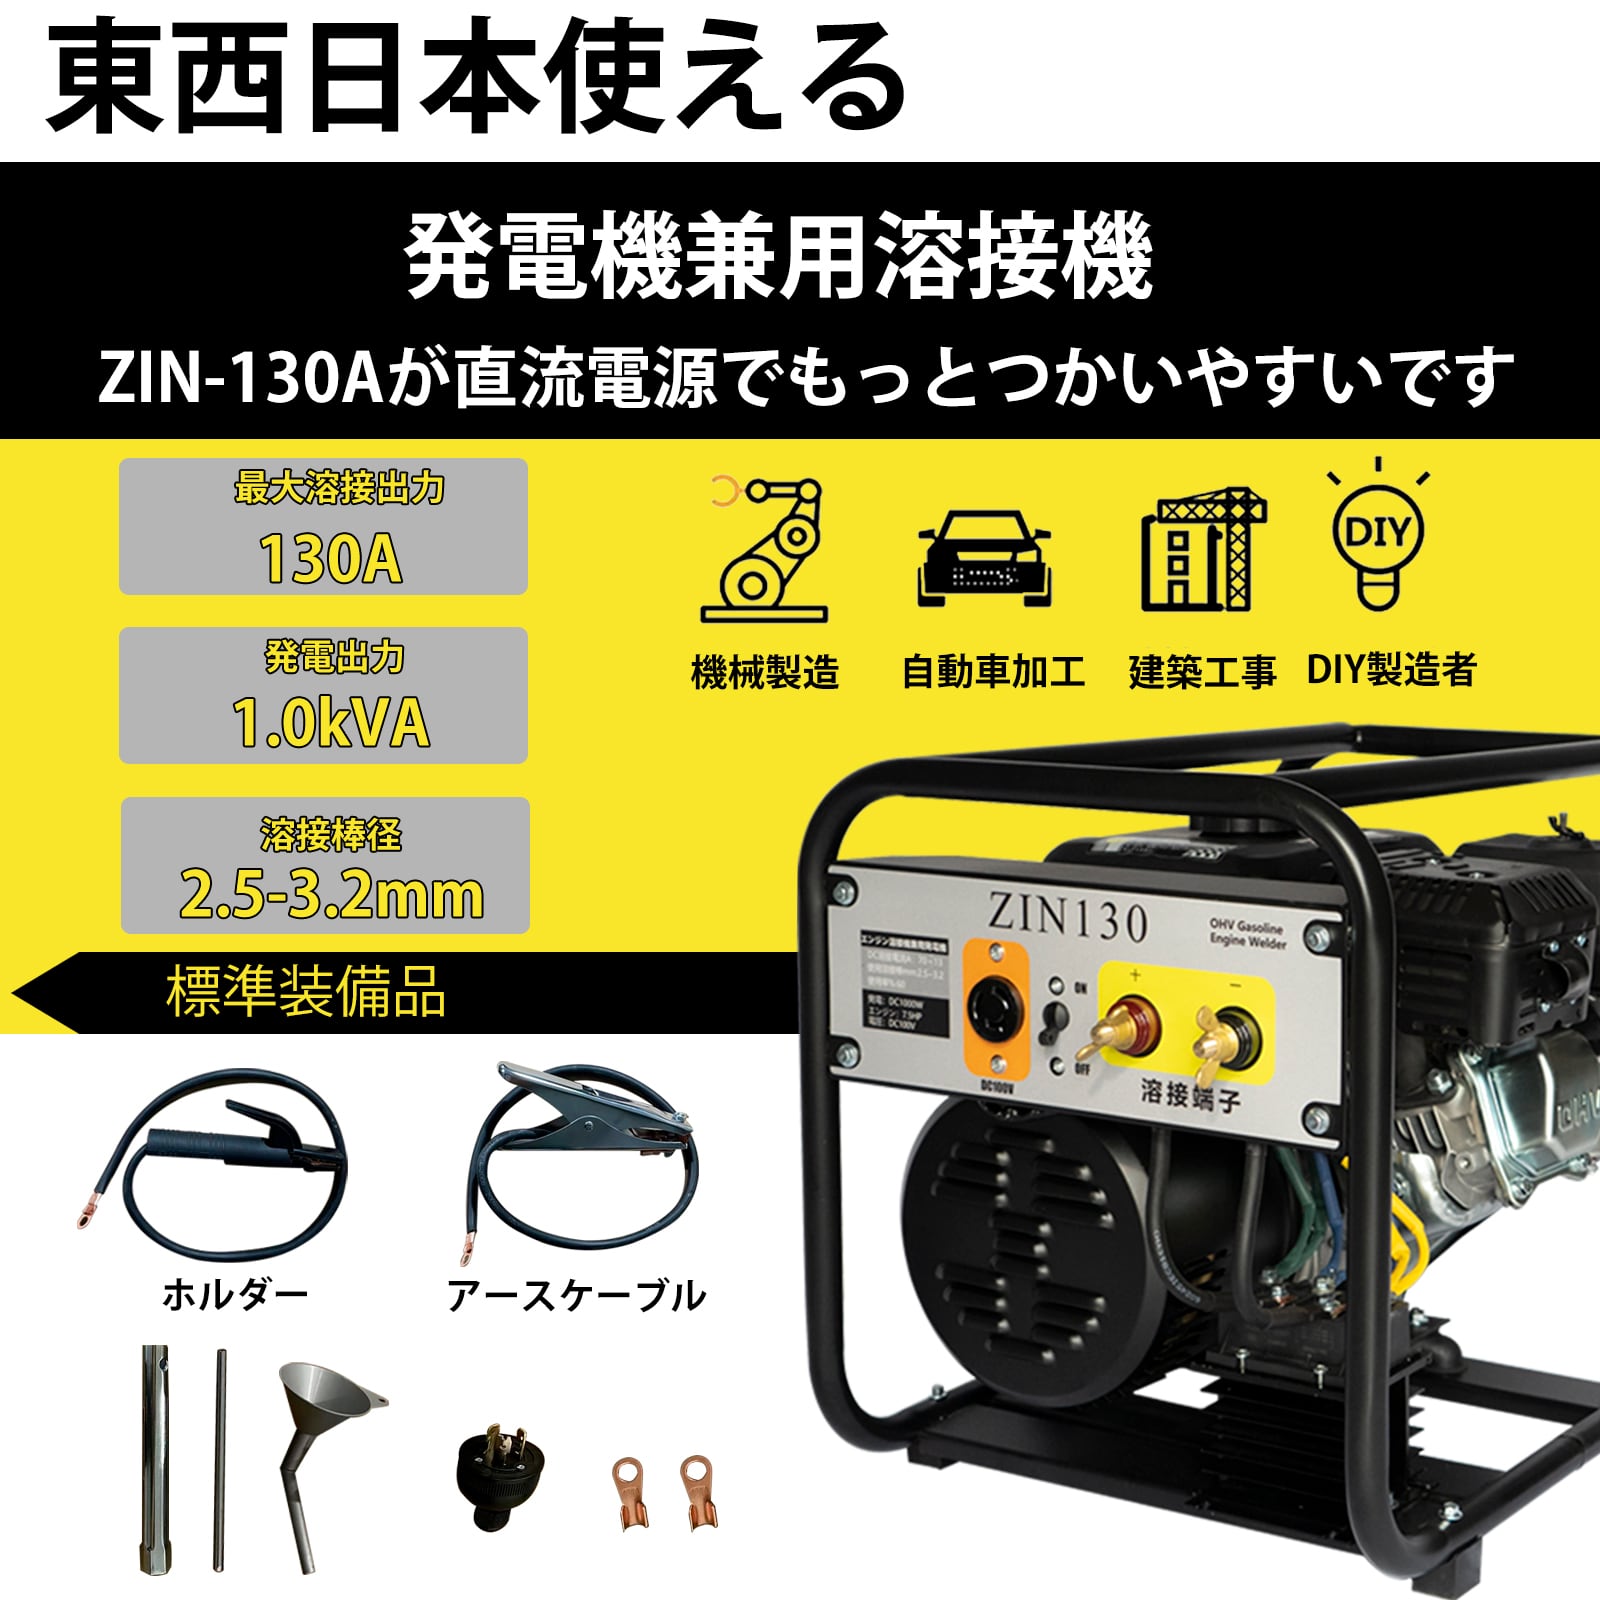 エンジン溶接機 発電機兼用溶接機 ガソリンエンジン溶接機 100V 最大出力1KVA 東/西日本地域に適用 zinnore